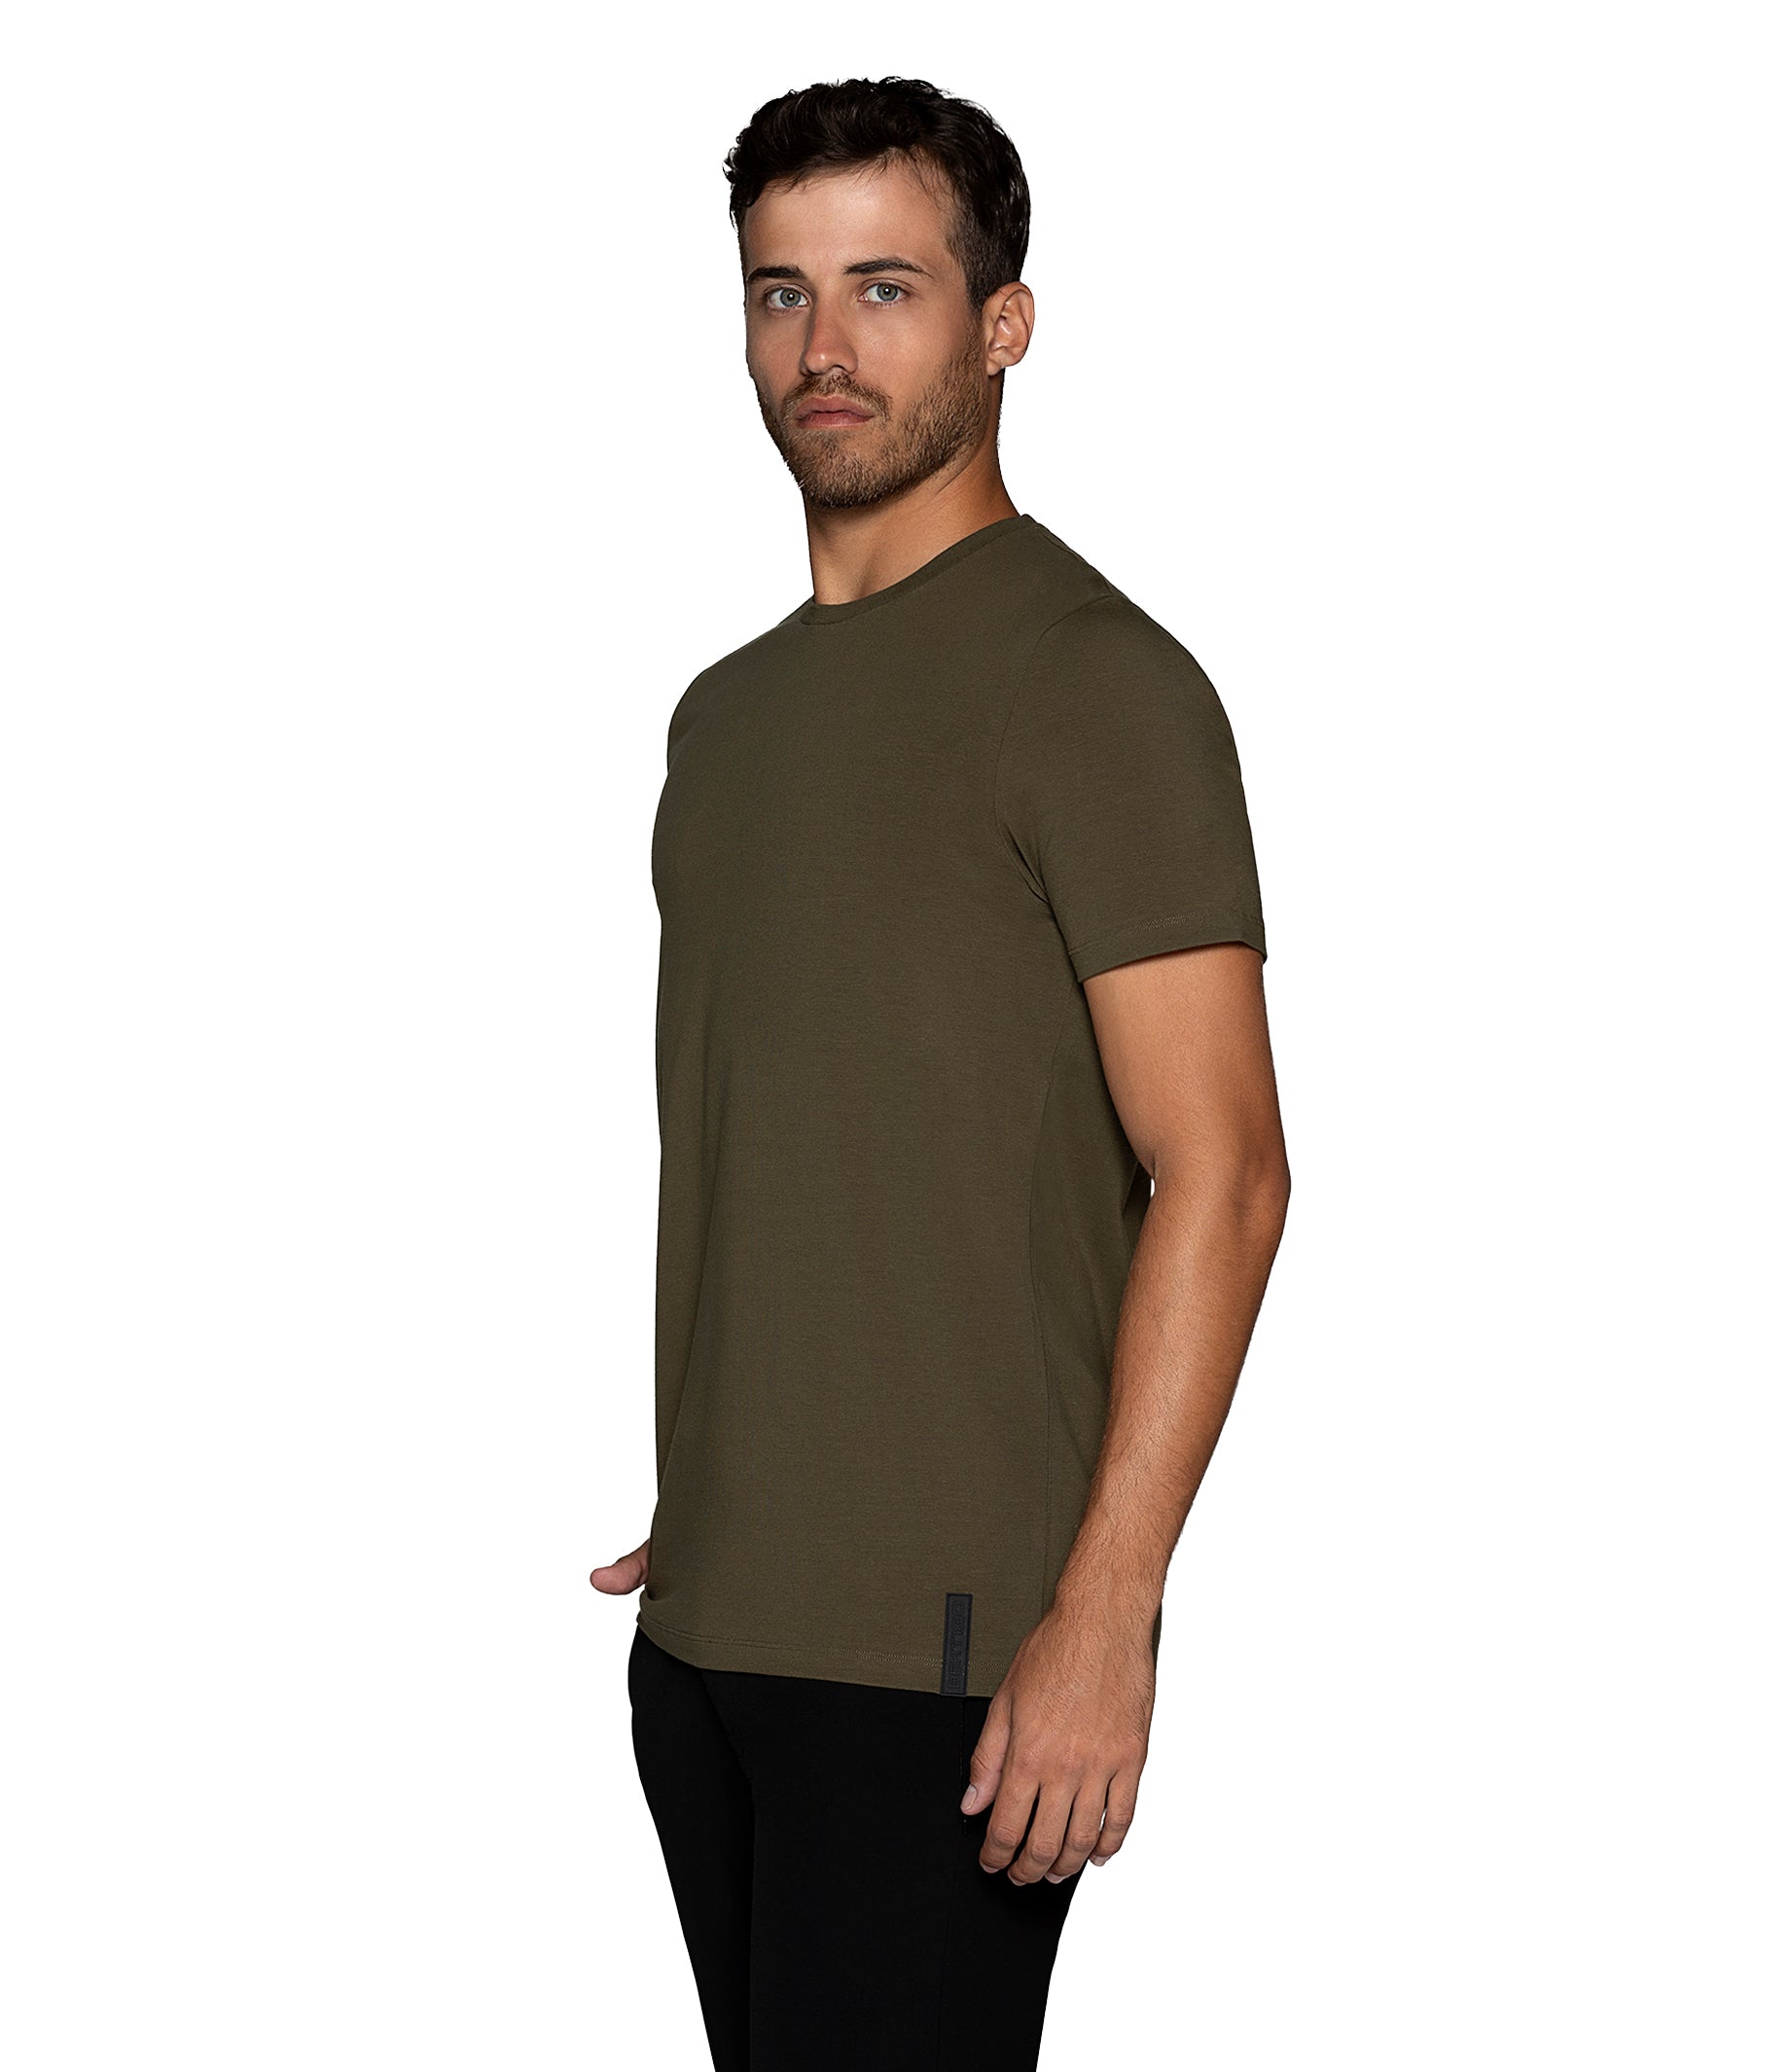 Florance for Olive Bertigo Bertigo Shirt Men Shop Solid T –